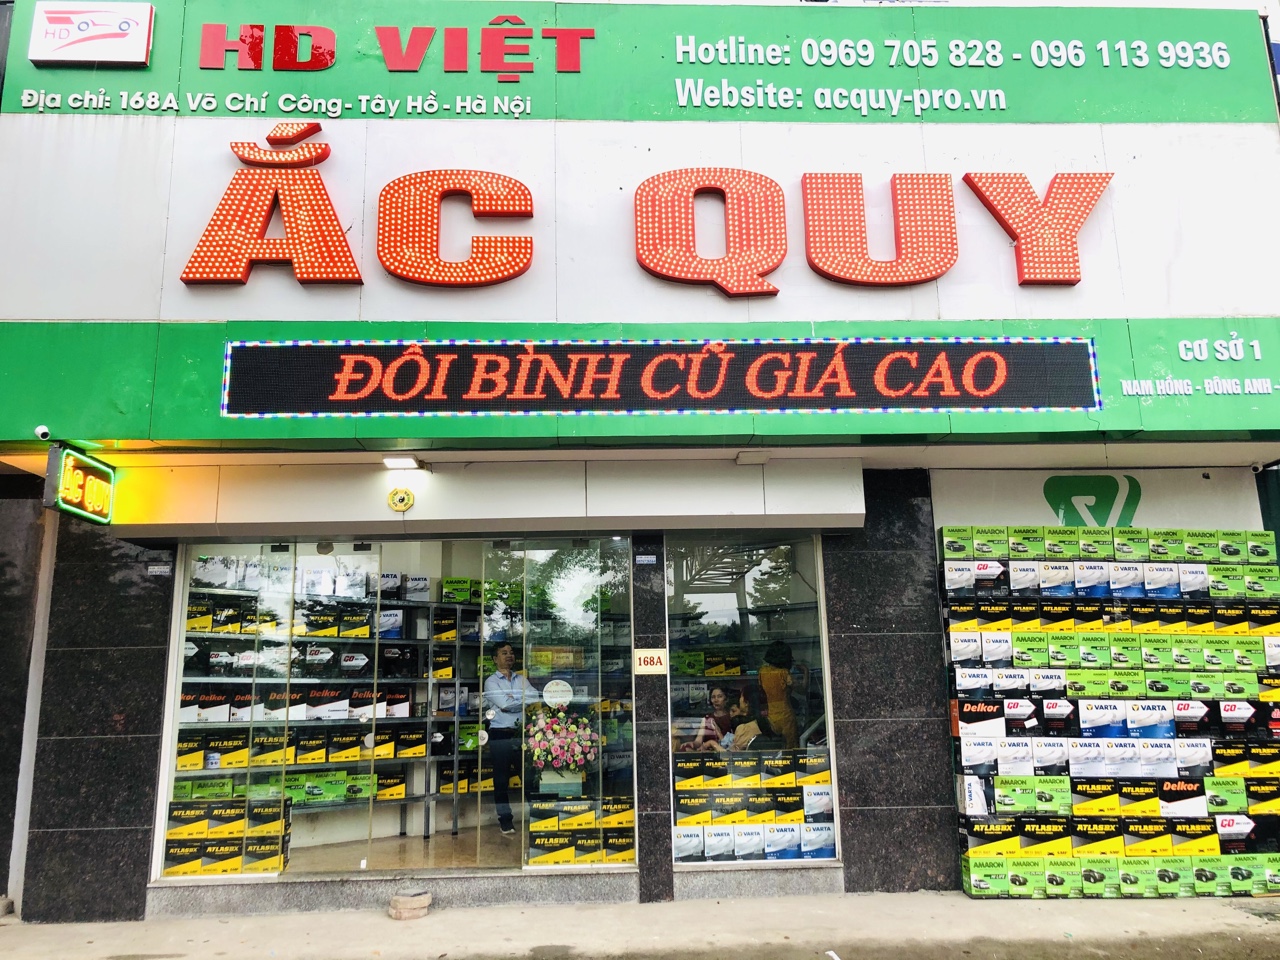 HD Việt - Thay Ắc quy, câu bình ắc quy tận nhà tạ iVinhomes Gardenia, Nam Từ Liêm, Hà Nội